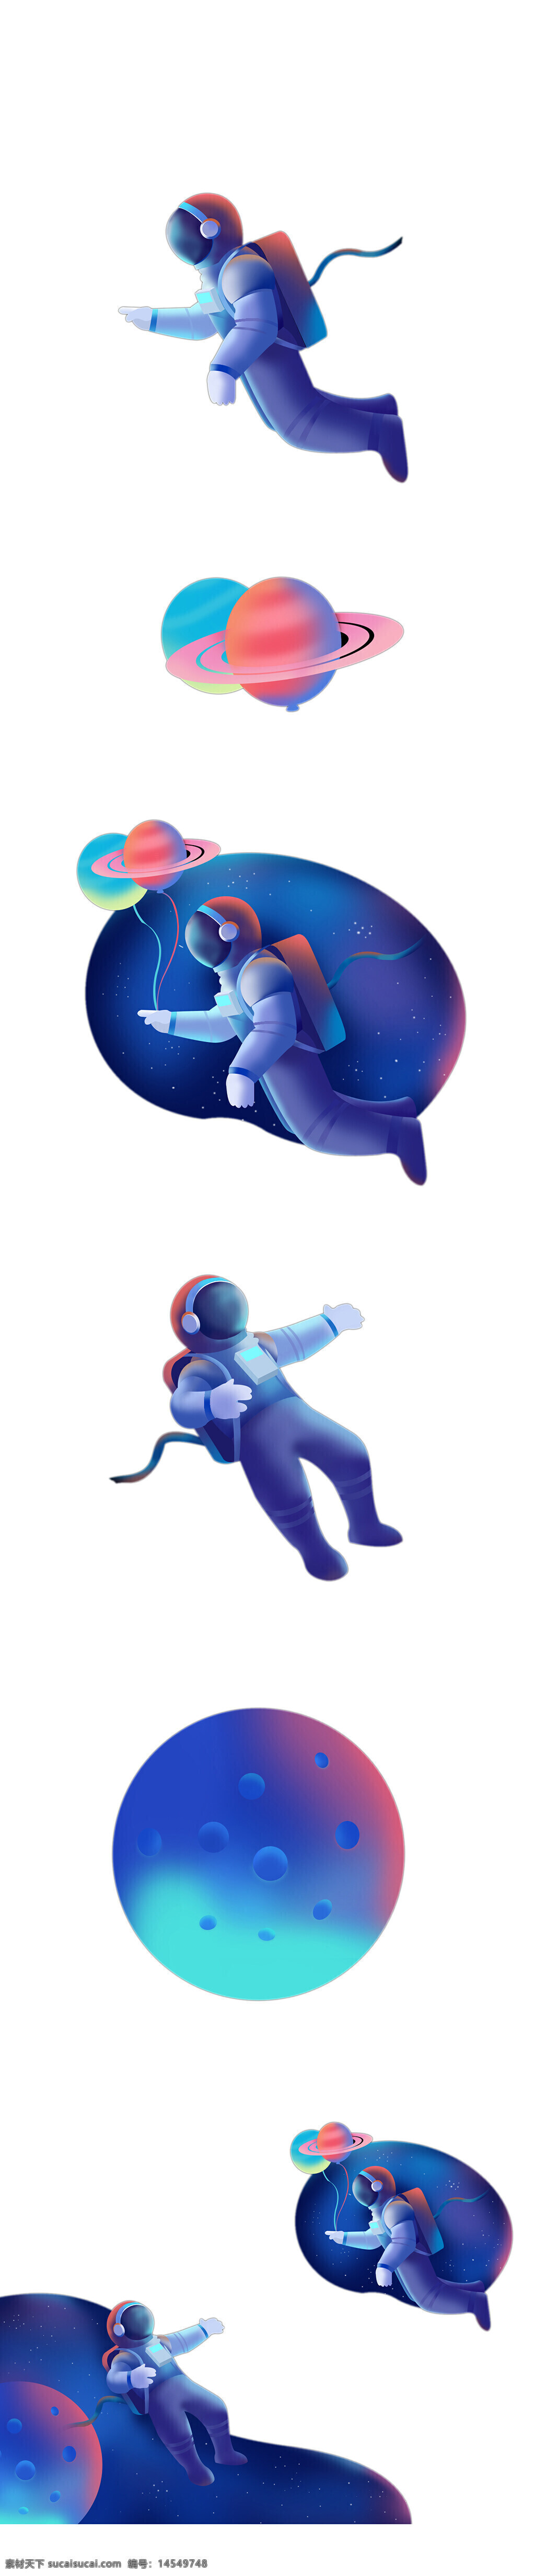 宇航员 太空员 宇航服 遨游太空 宇宙飞船 梦想 手绘宇航员 卡通宇航员1